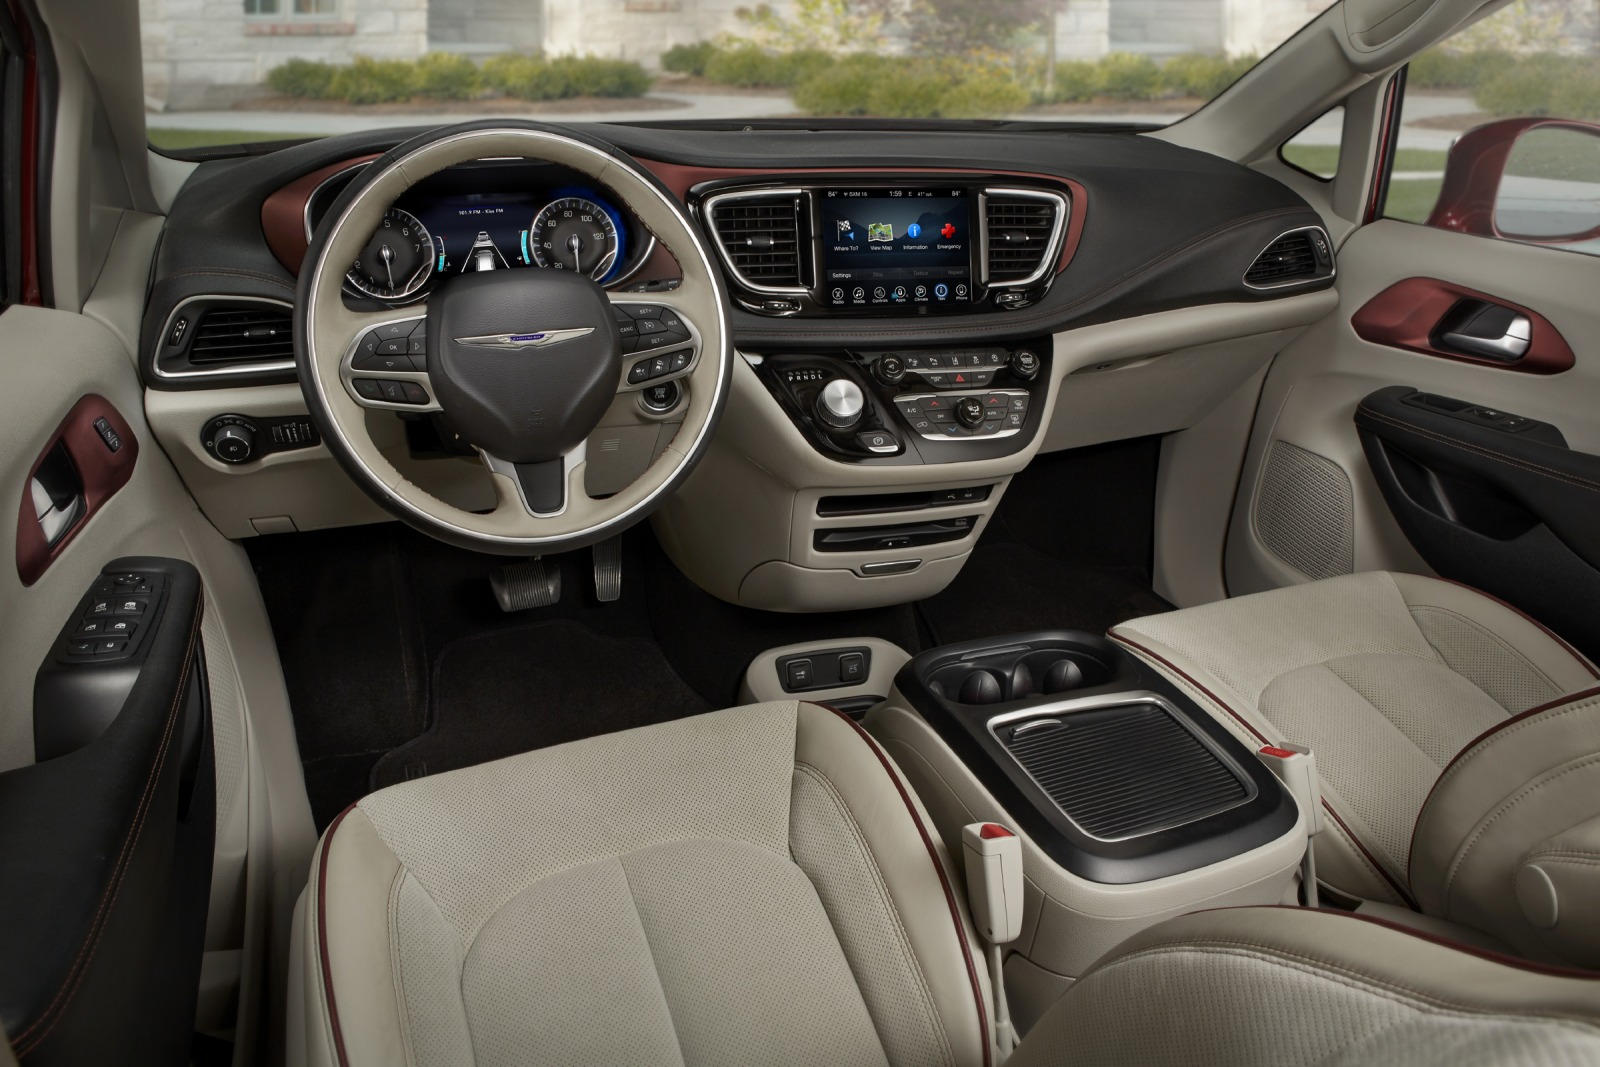 2018 Chrysler Pacifica Interior Photos | CarBuzz